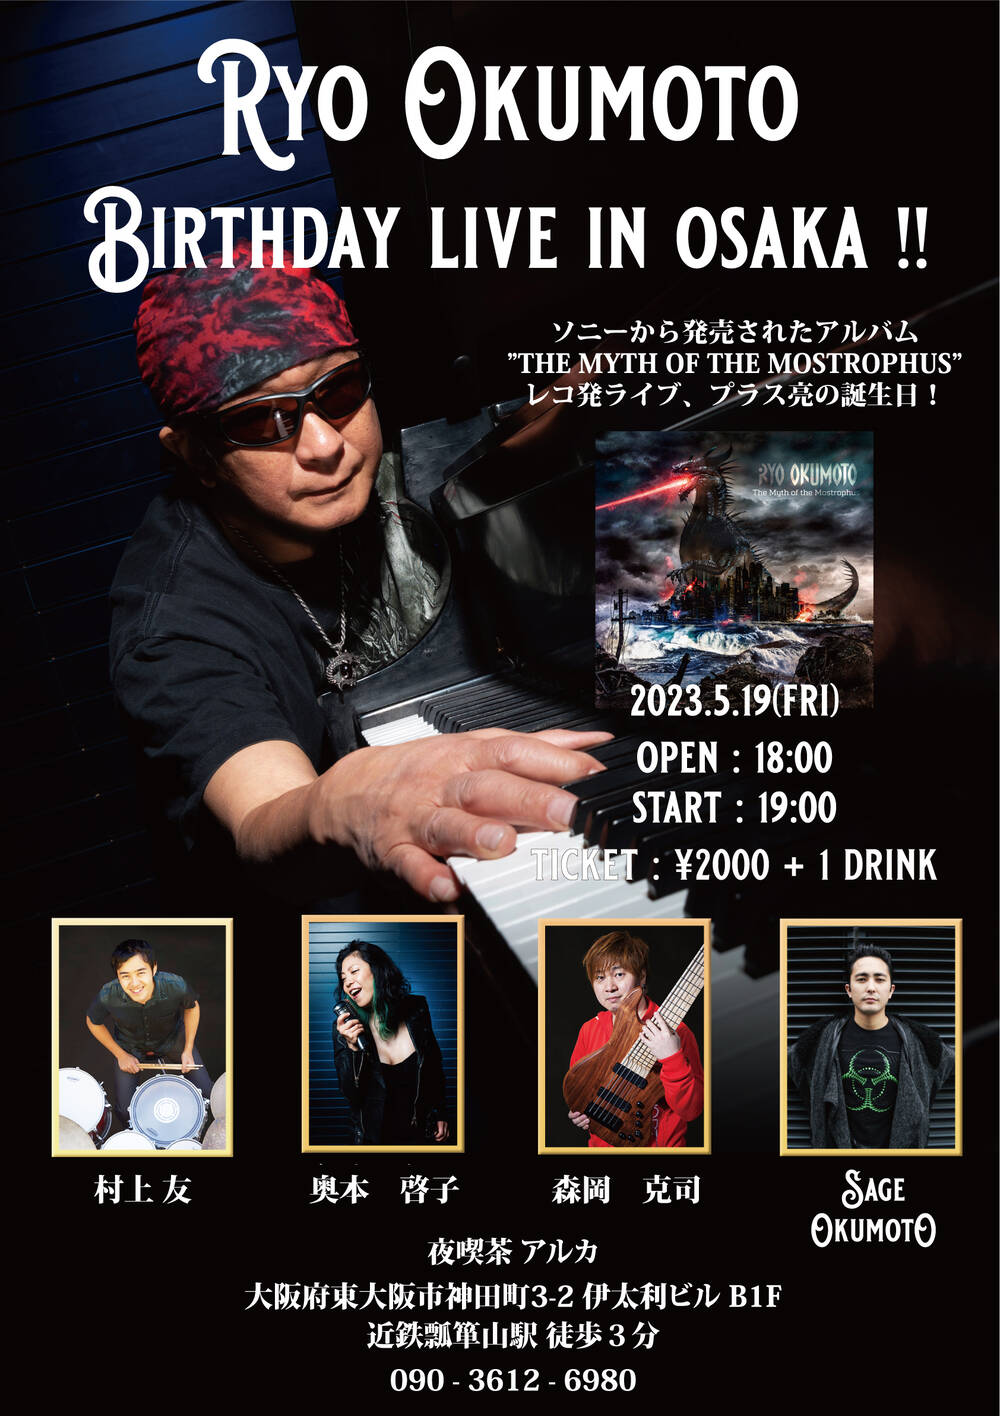 Birthday Live in Osaka!